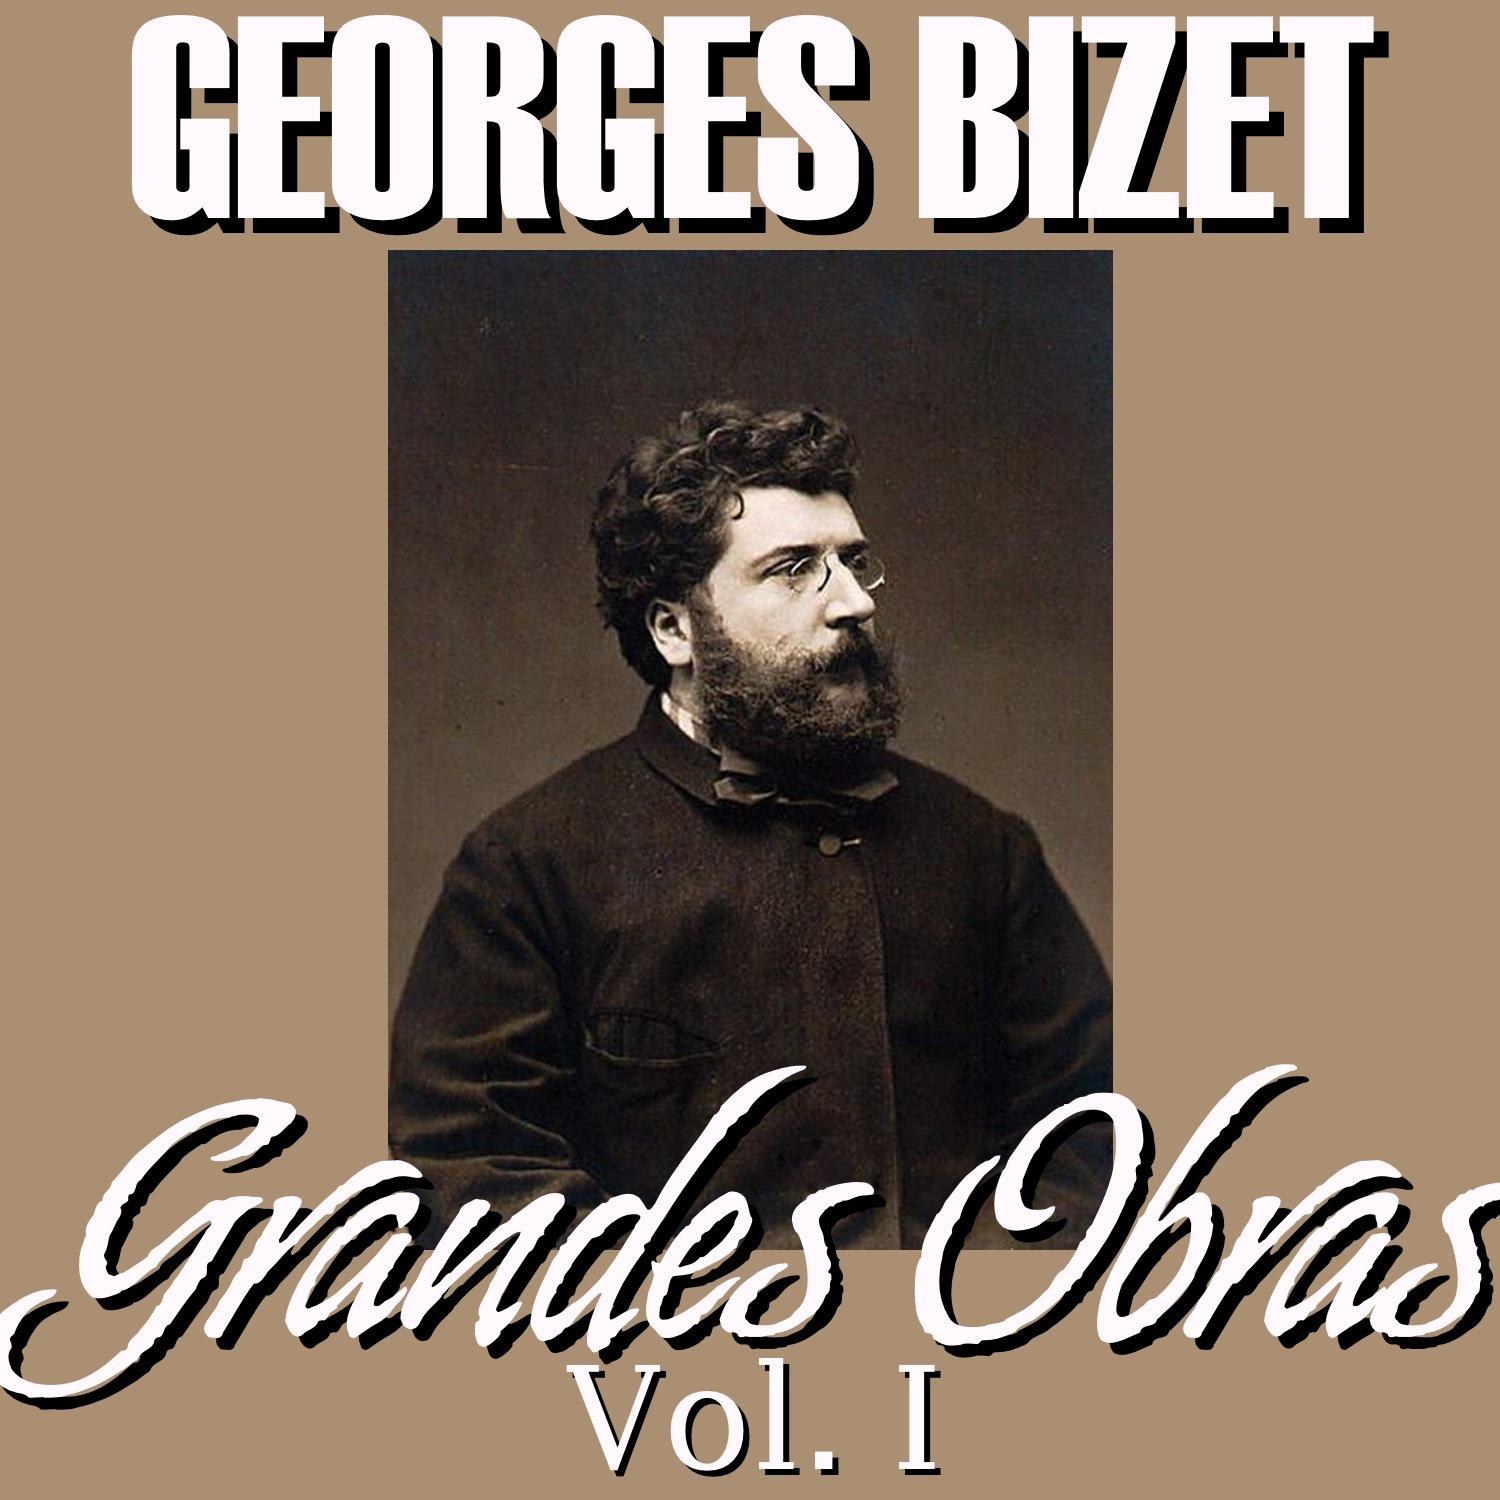 Georges Bizet Grandes Obras Vol.I